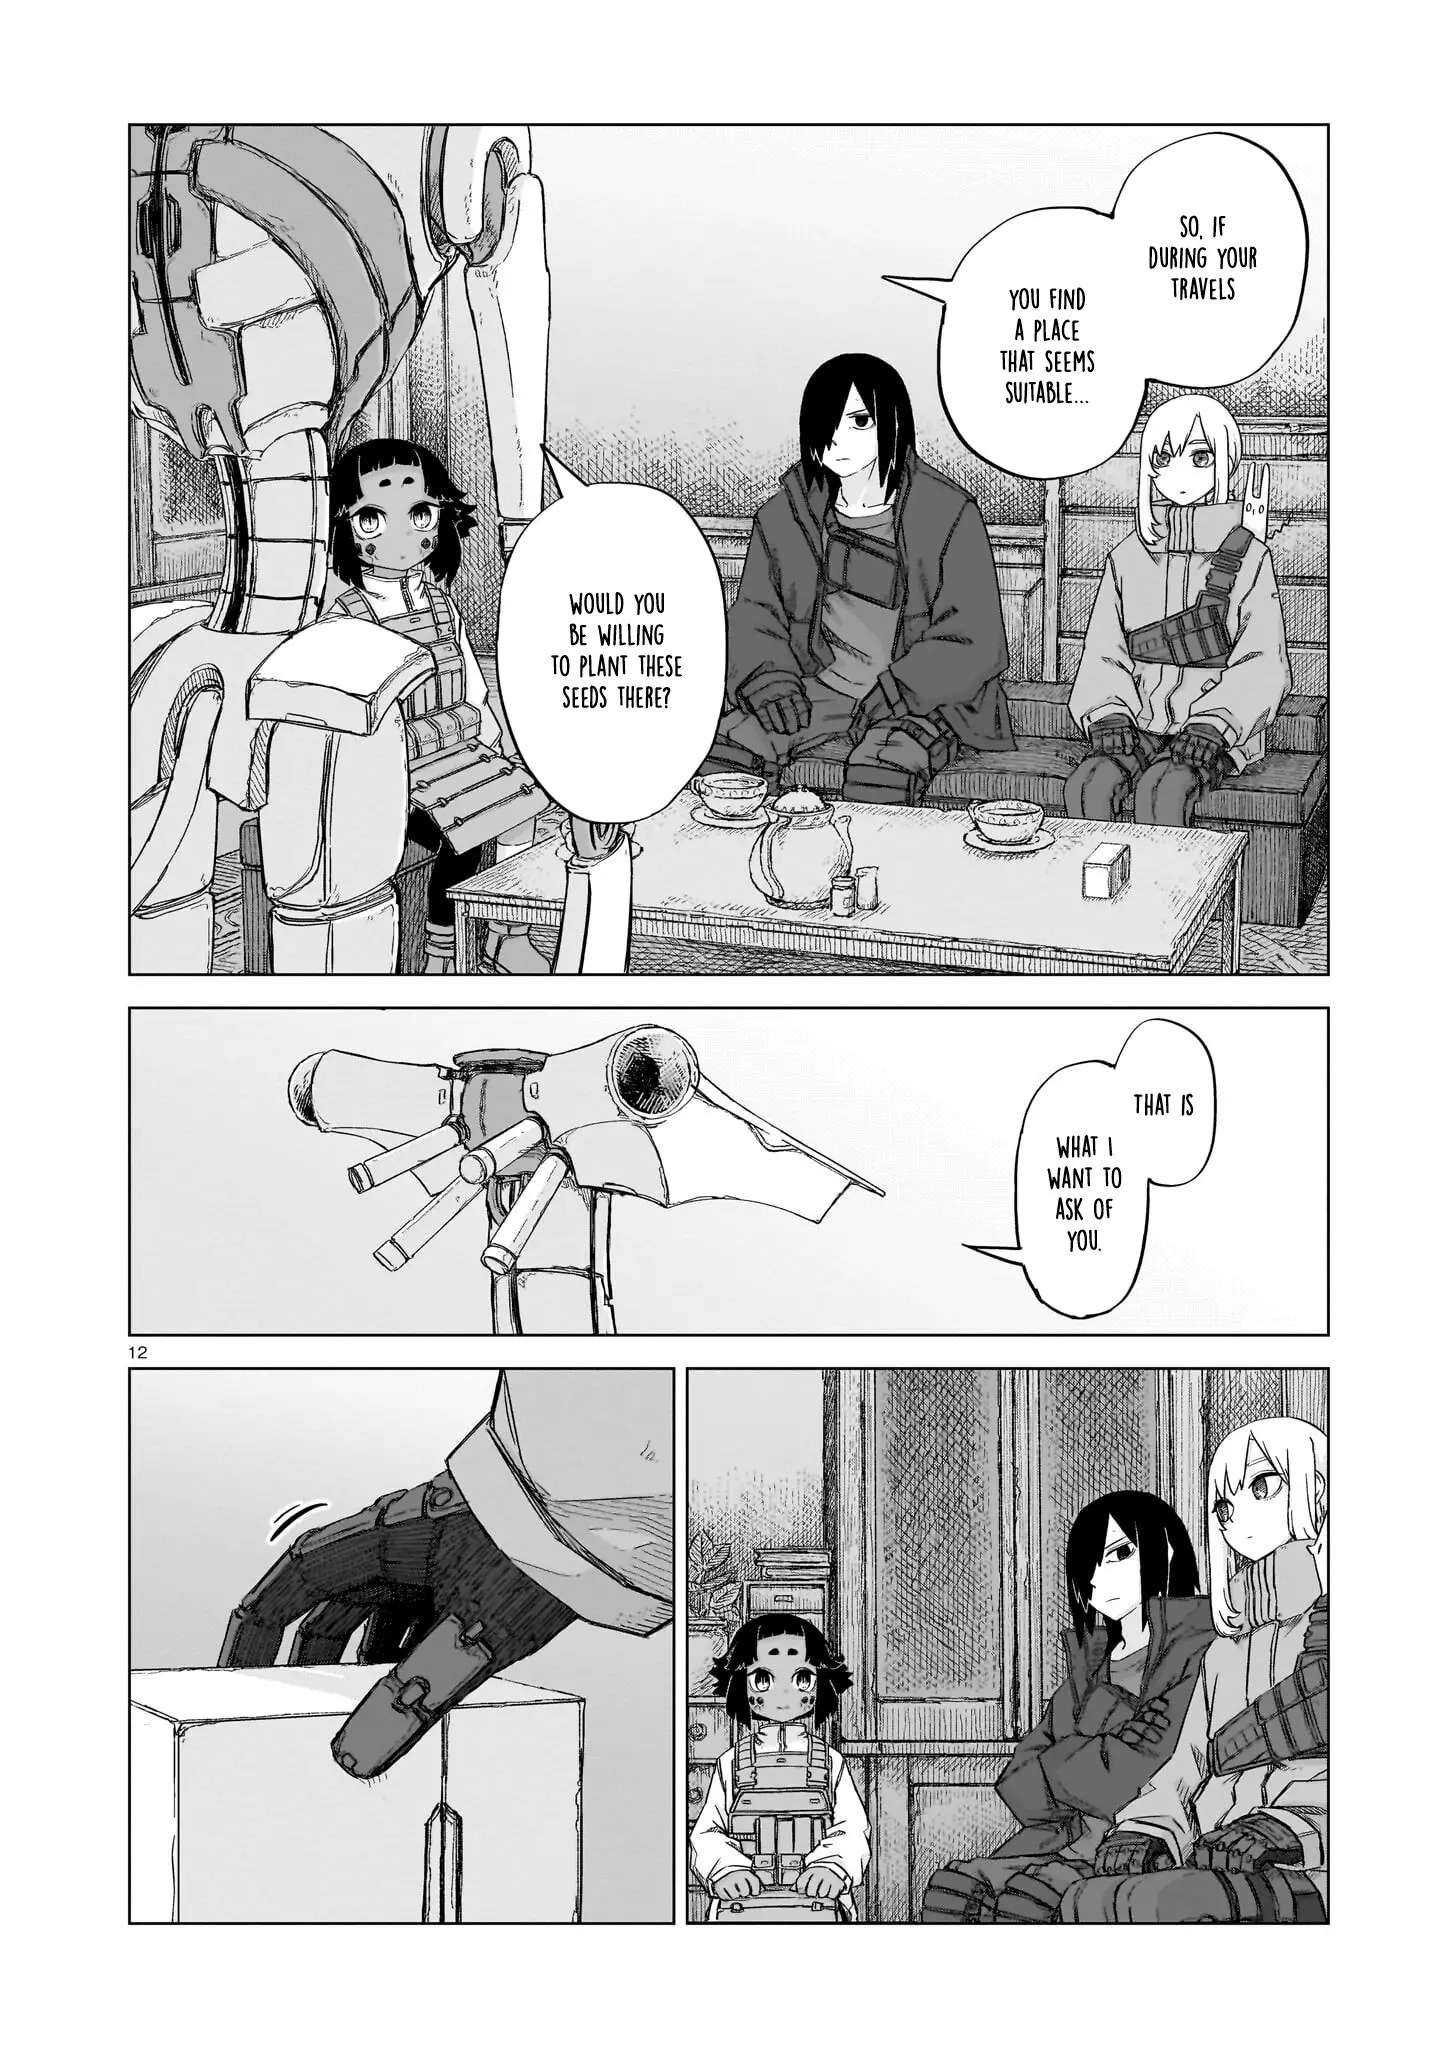 Usuzumi No Hate - 19 page 12-4cd22e2c